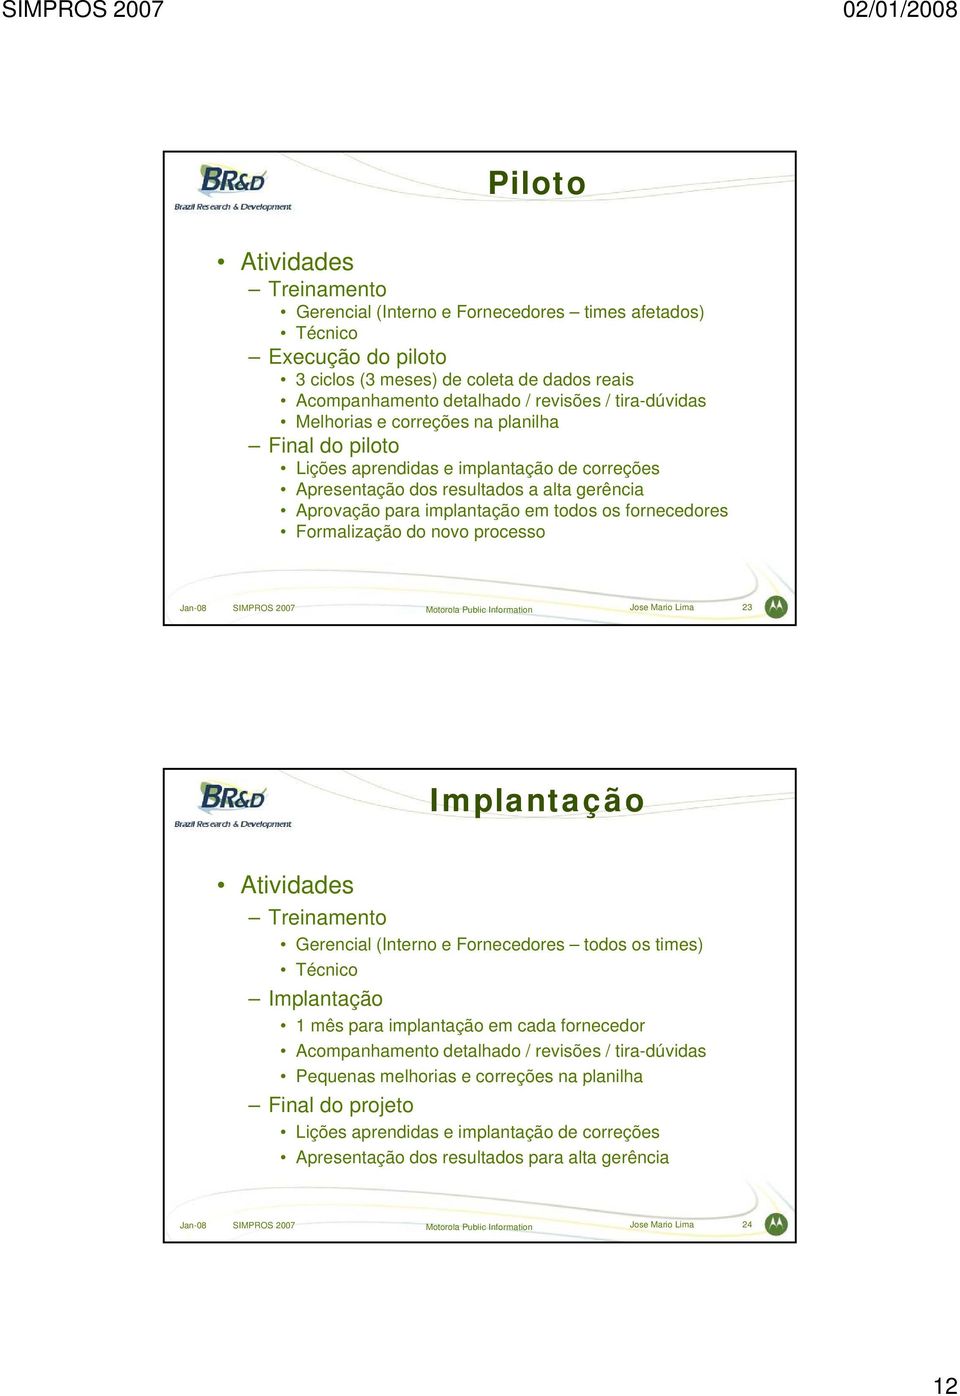 fornecedores Formalização do novo processo Jan-08 SIMPROS 2007 Motorola Public Information Jose Mario Lima 23 Implantação Atividades Treinamento Gerencial (Interno e Fornecedores todos os times)